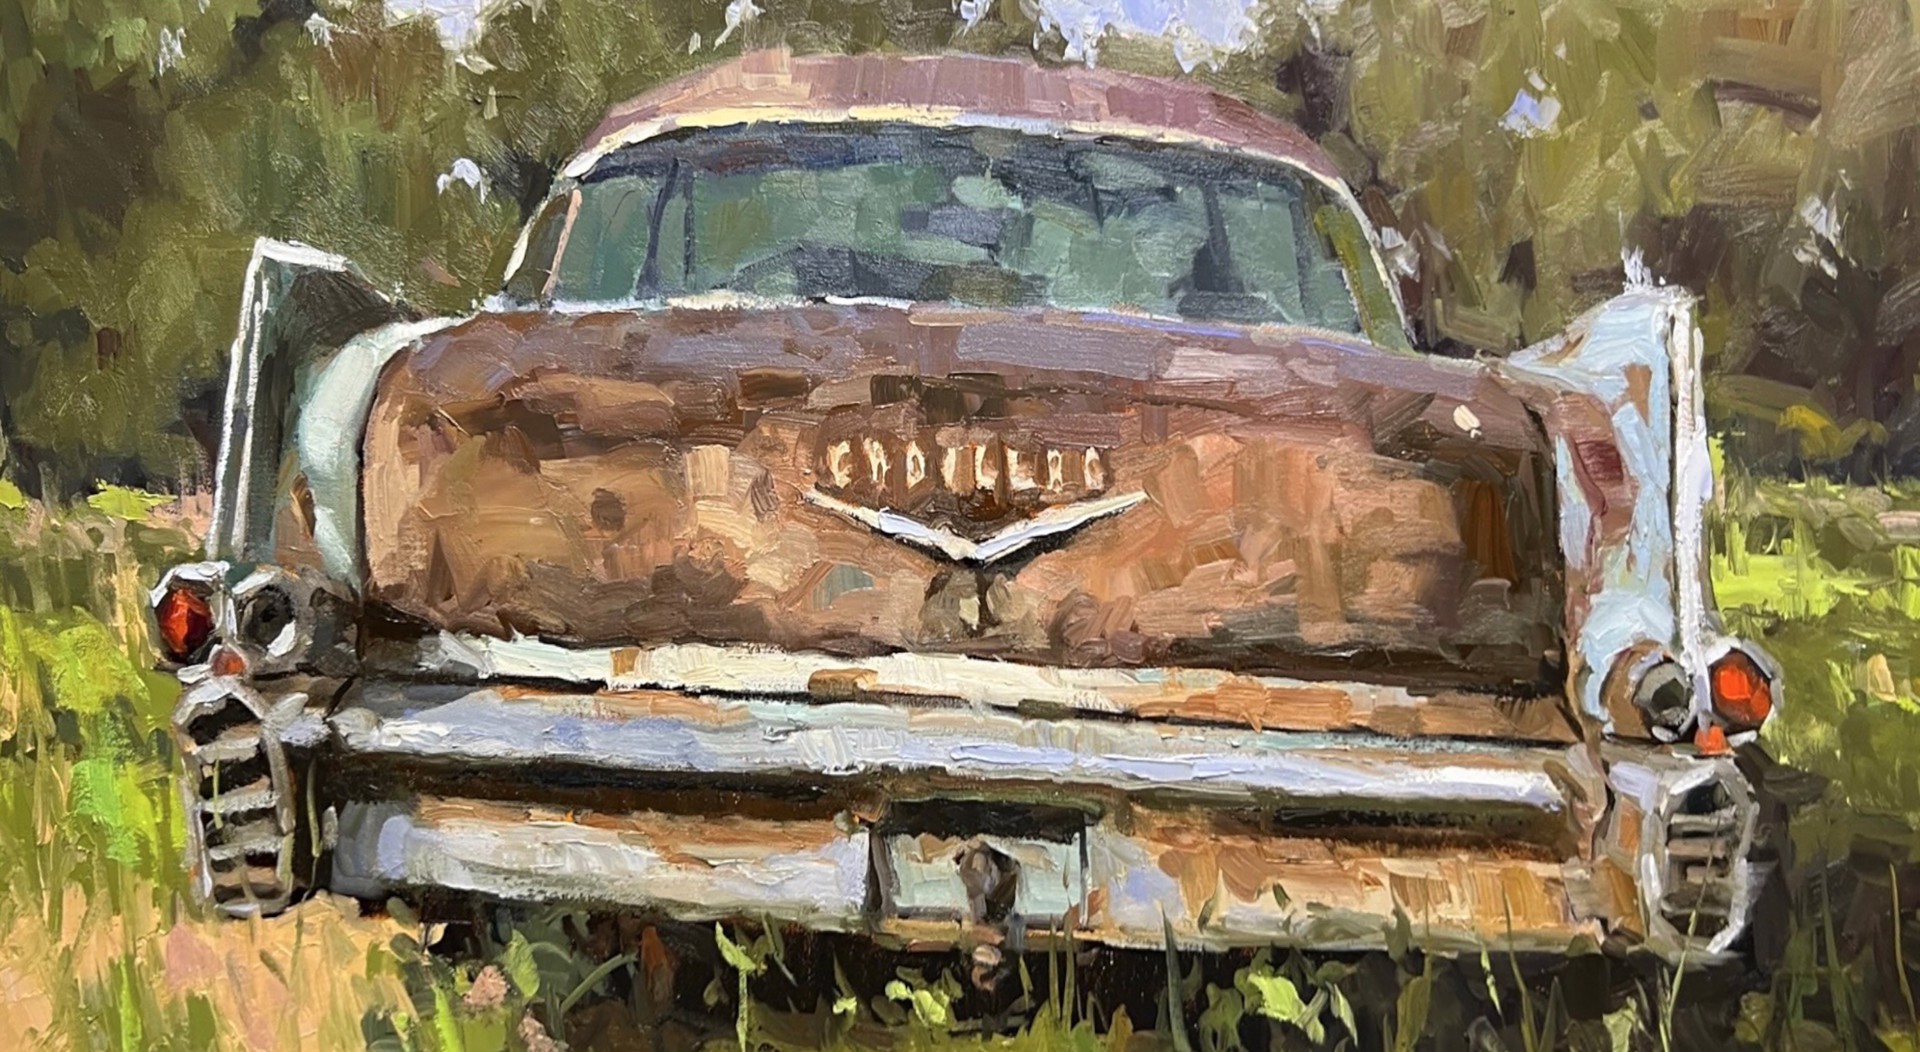 Cadillac in the Wild by David Boyd